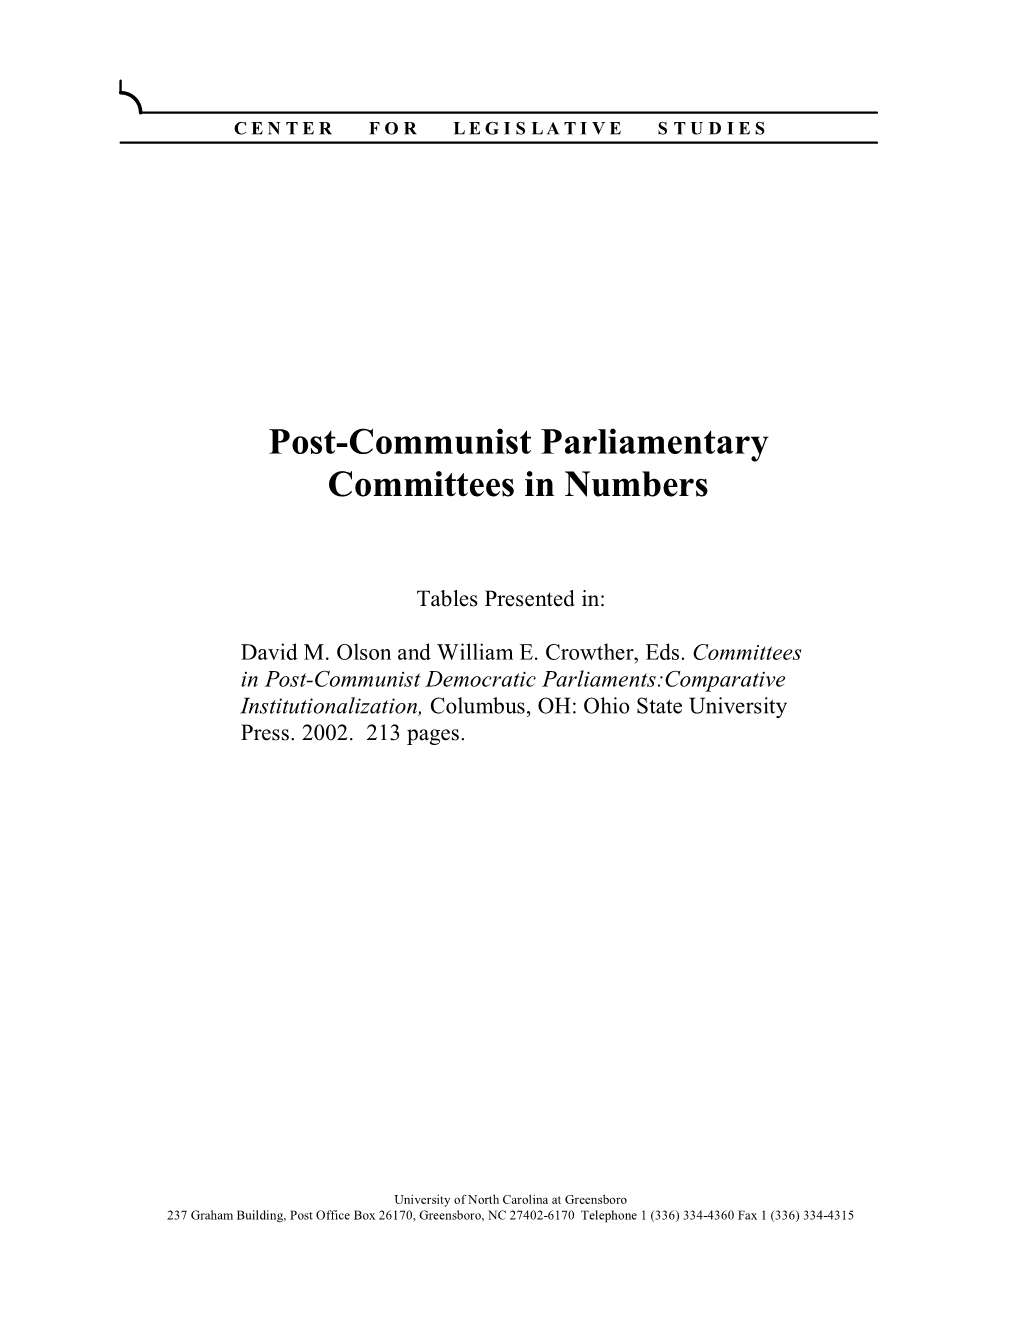 Postcommunist Parliamentary Committees in Numbers